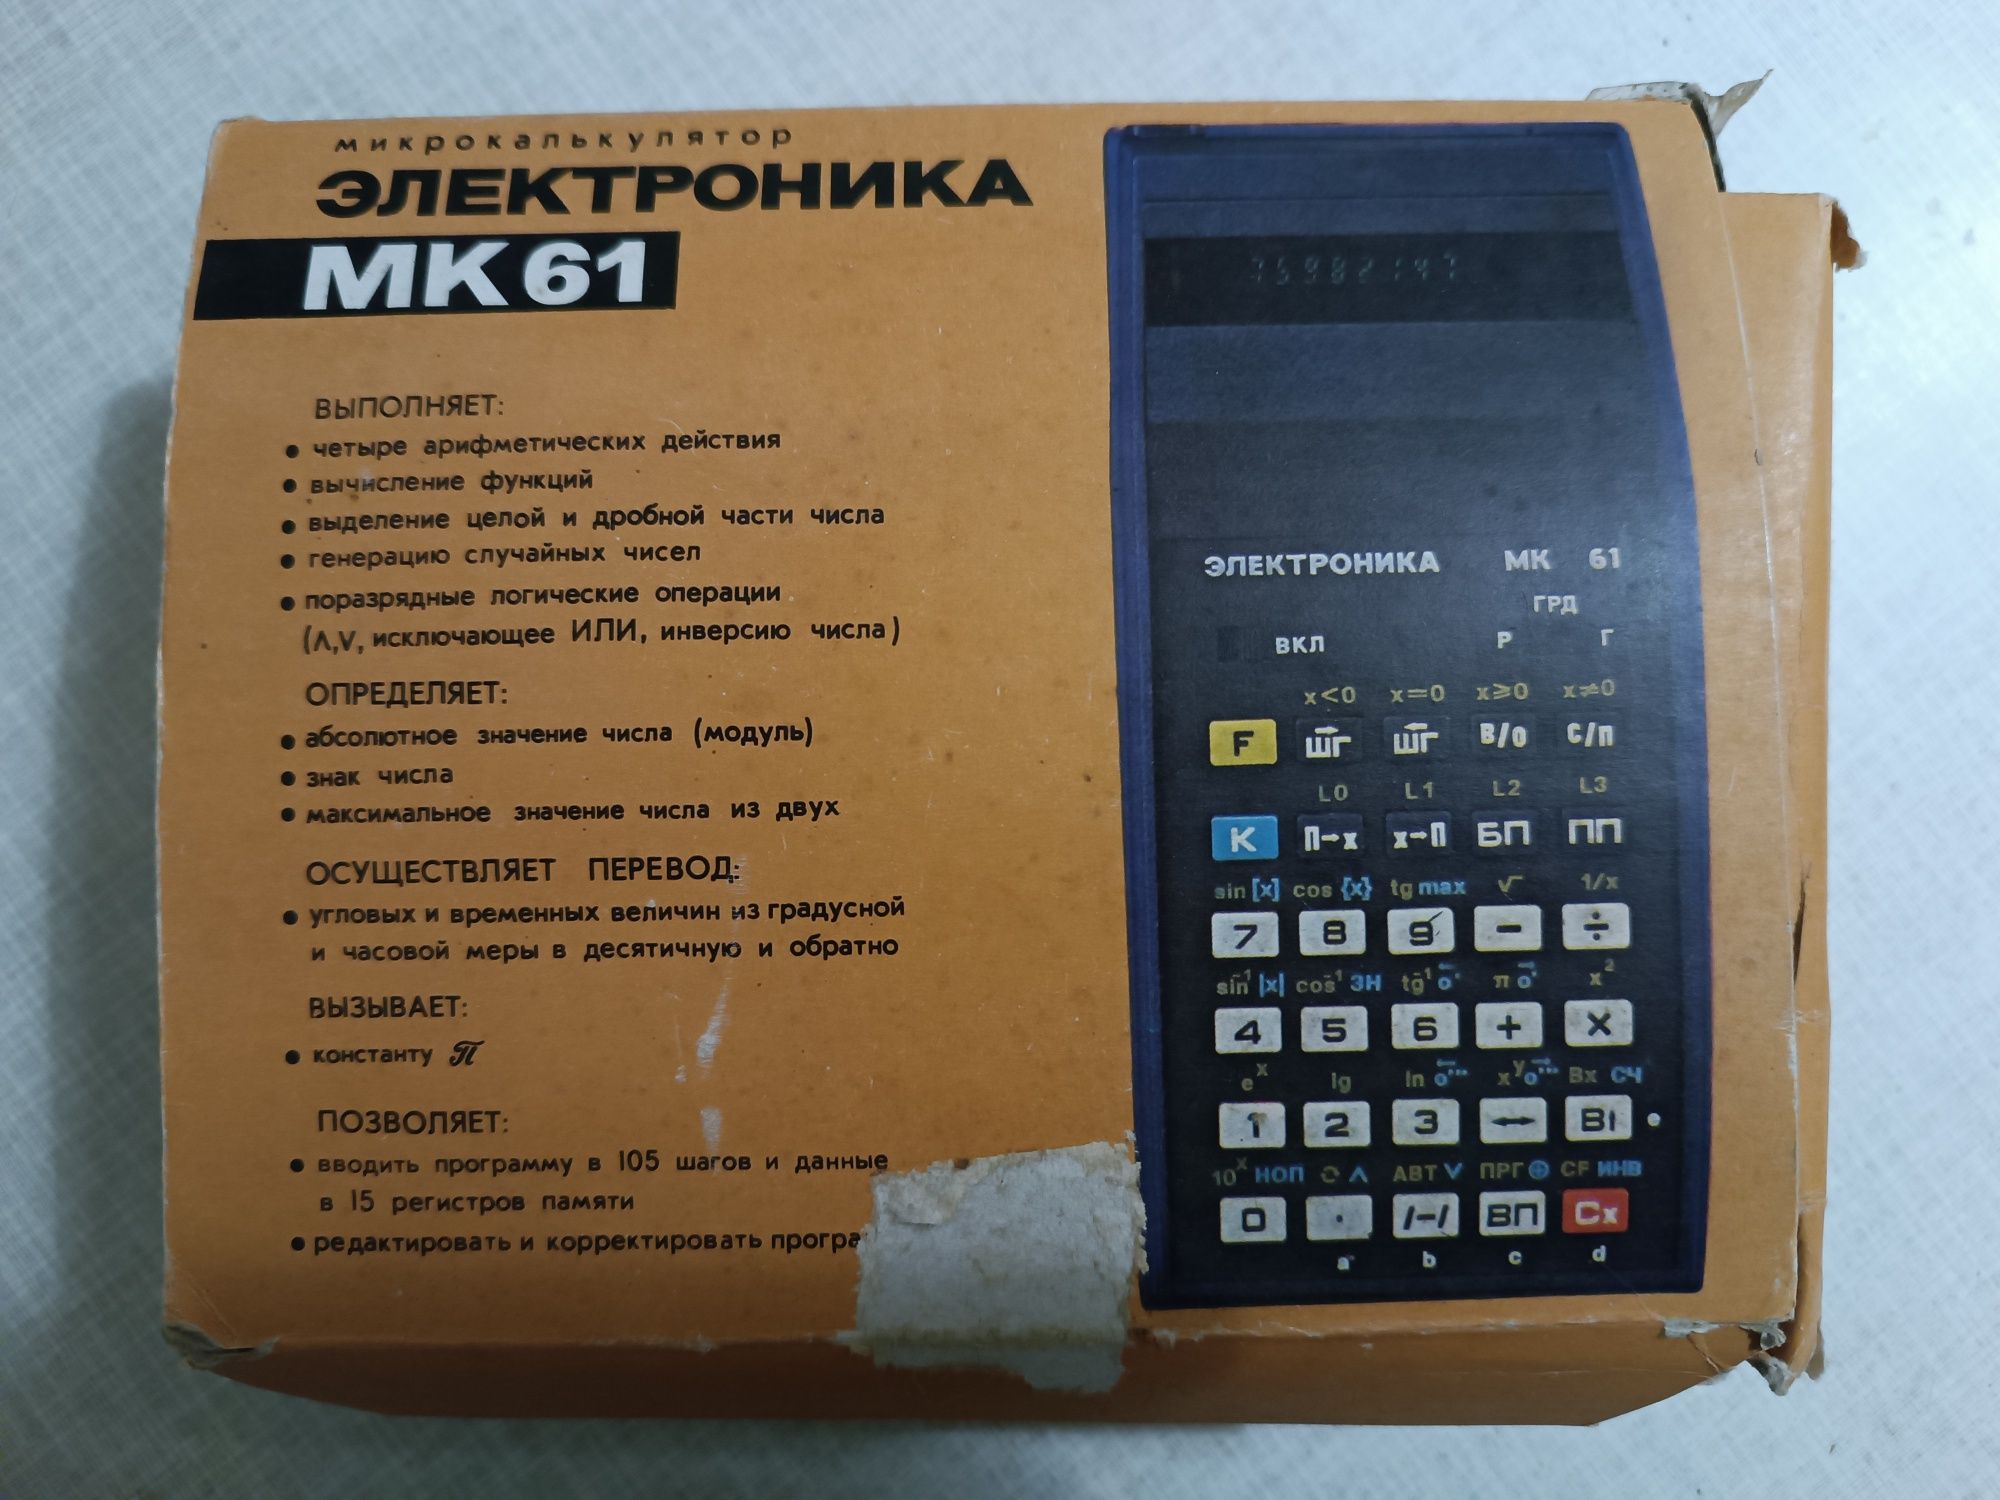 МК-61 — программируемый микрокалькулятор